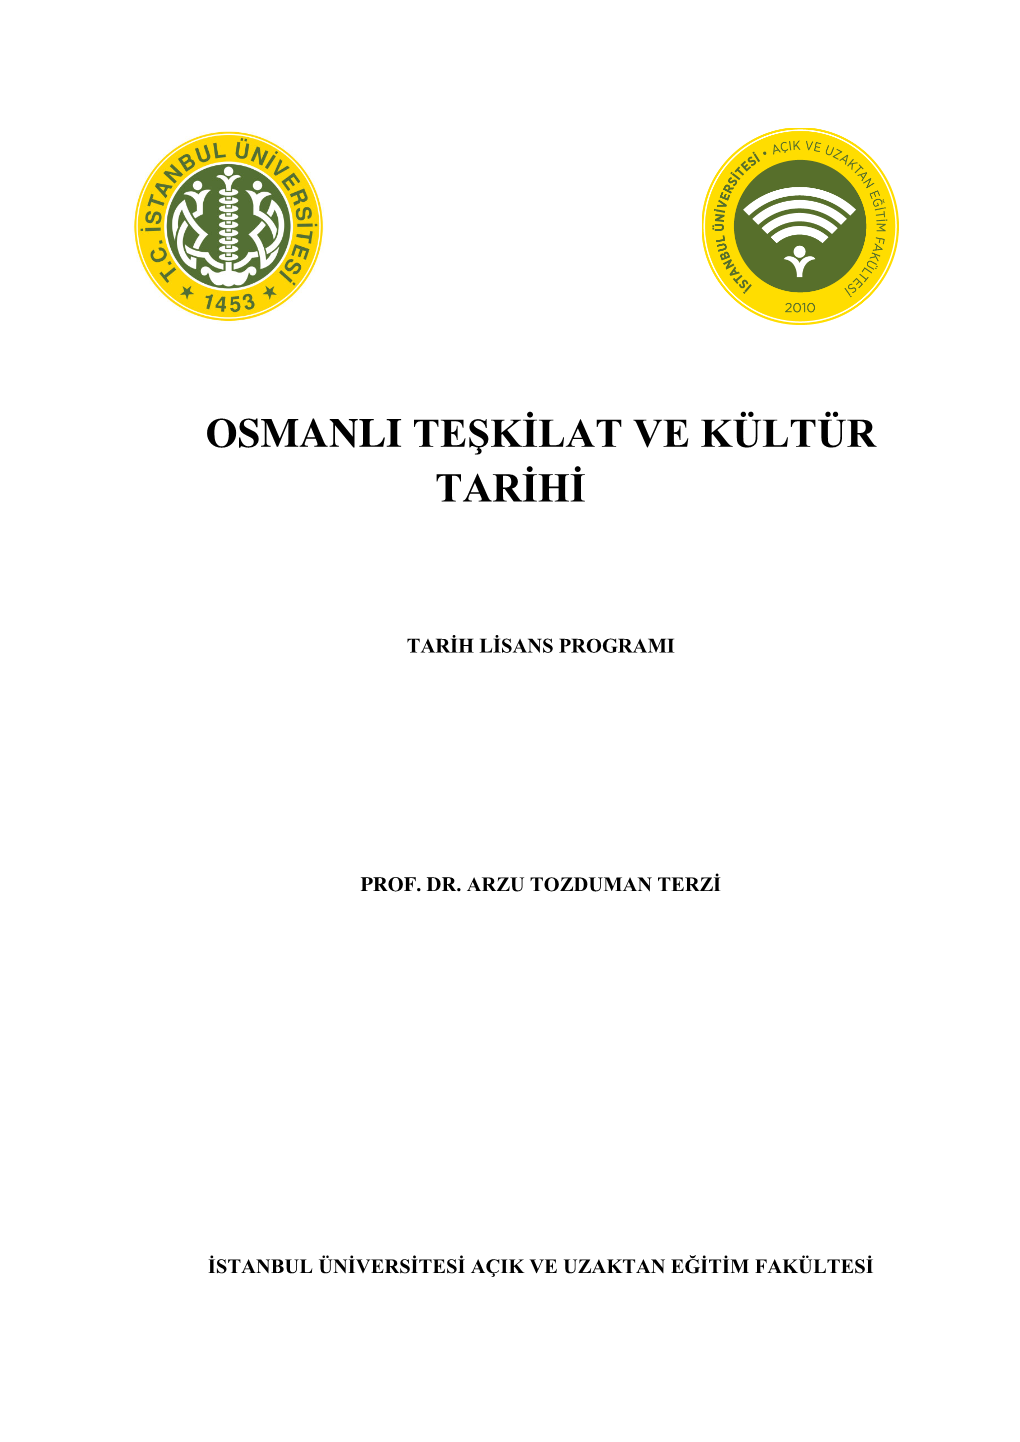 Osmanli Teşkilat Ve Kültür Tarihi